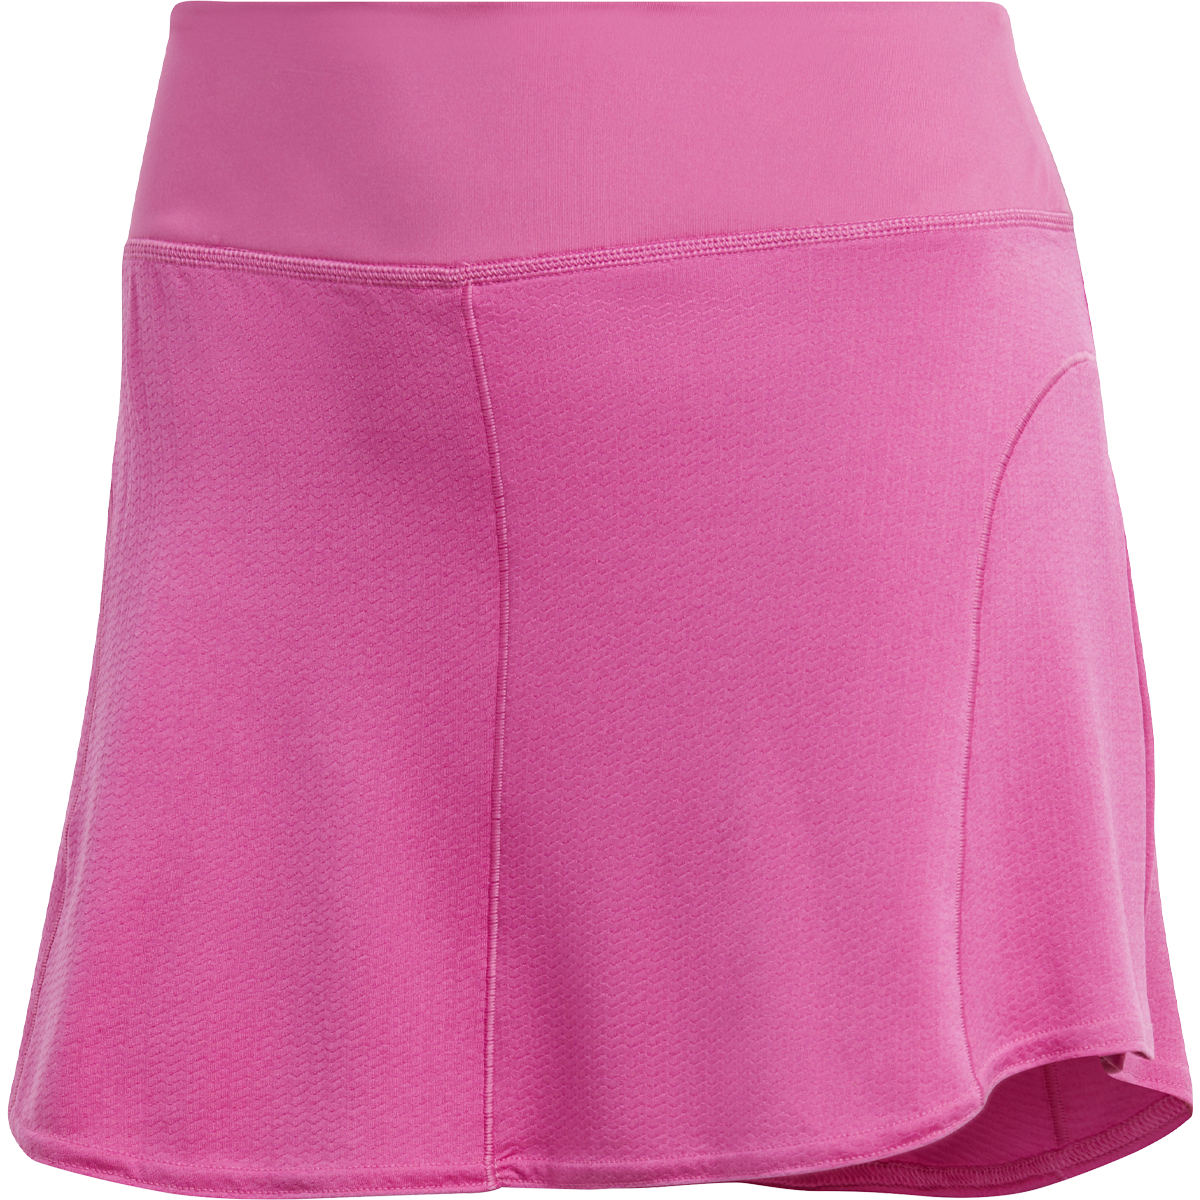 Women's Match Skirt alternate view